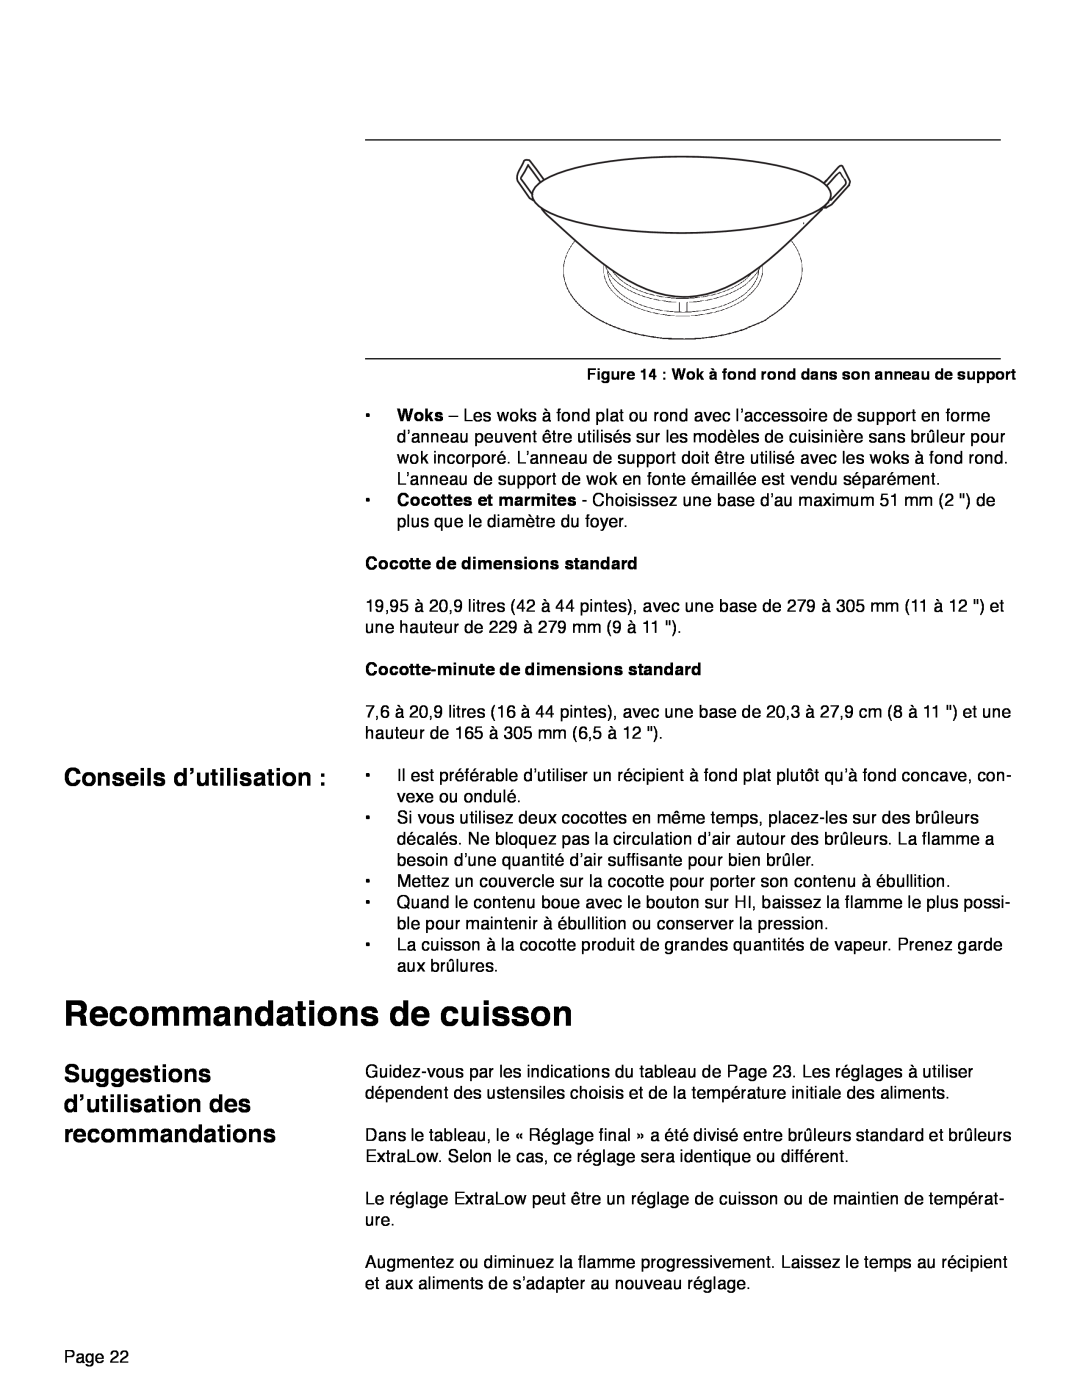 Thermador PRD30, PRD48 Recommandations de cuisson, Conseils d’utilisation, Suggestions d’utilisation des recommandations 